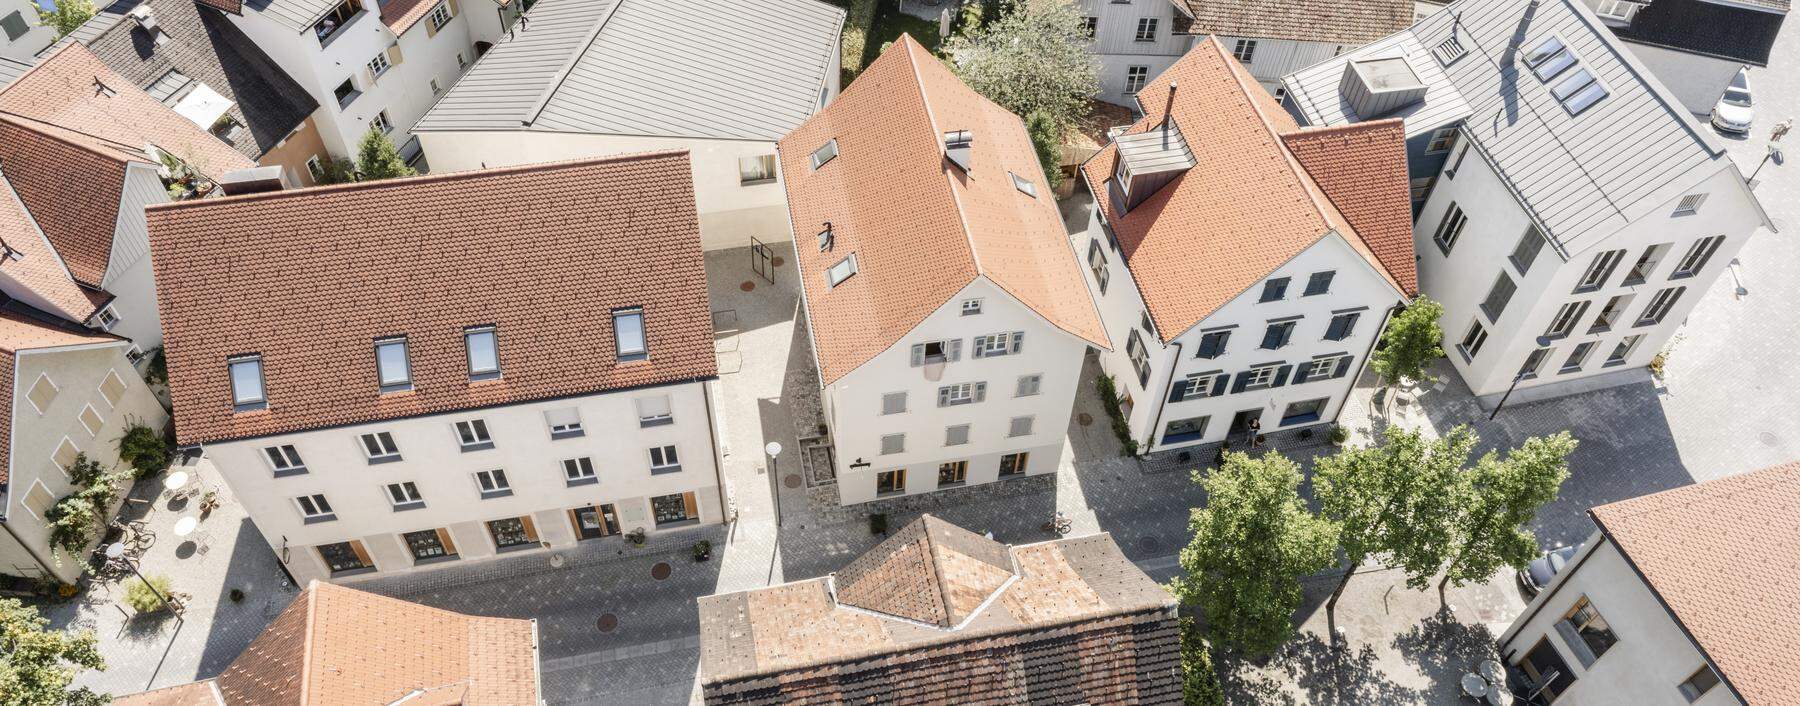 <strong>Denkmalgerechte Sanierung und behutsame Nachverdichtung in Hohenems, </strong>ausgezeichnet mit einem Bauherrenpreis. 